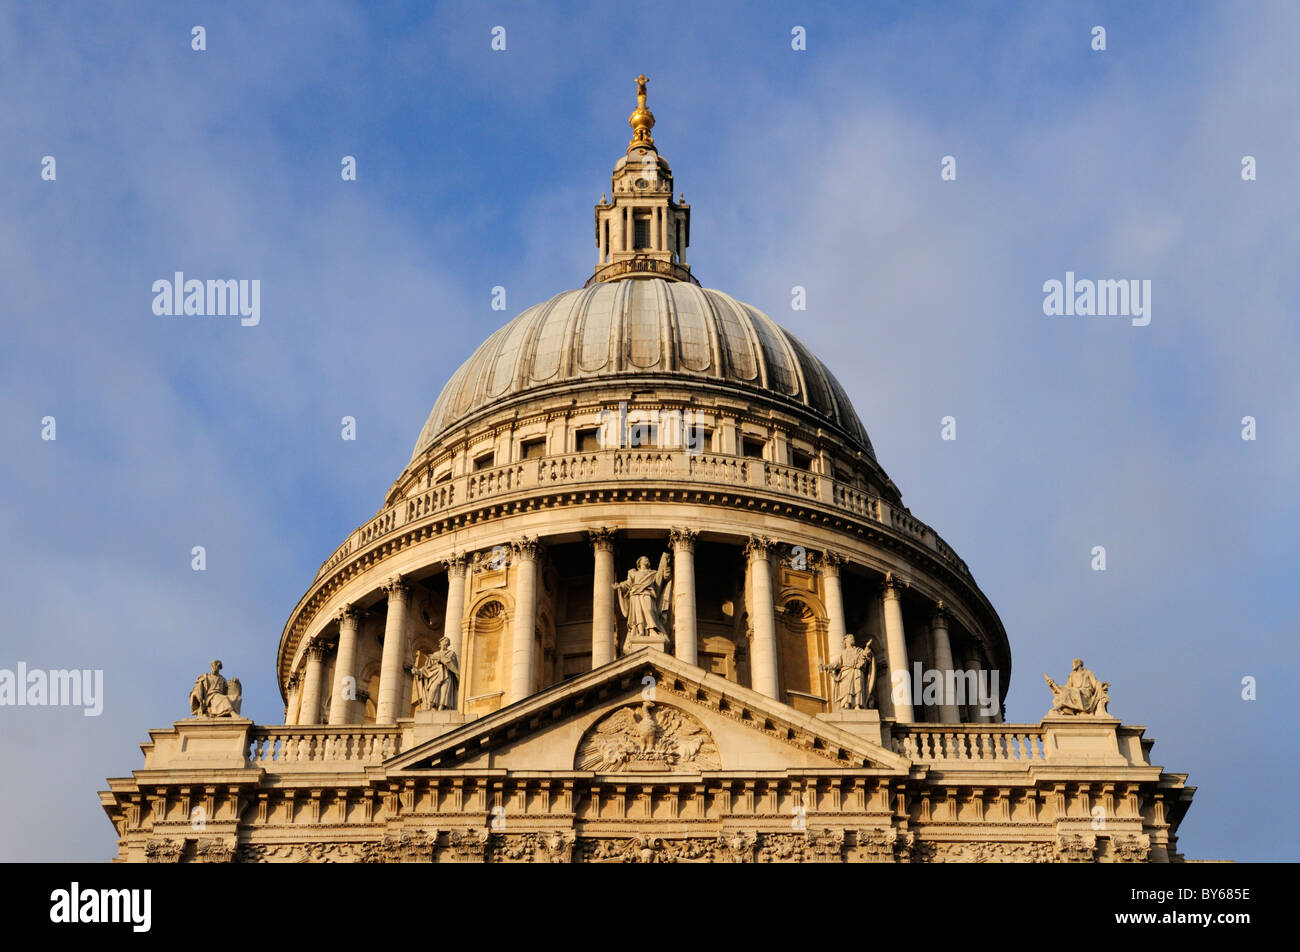 Techo abovedado de la Catedral de San Pablo, Londres, Inglaterra, Reino Unido. Foto de stock